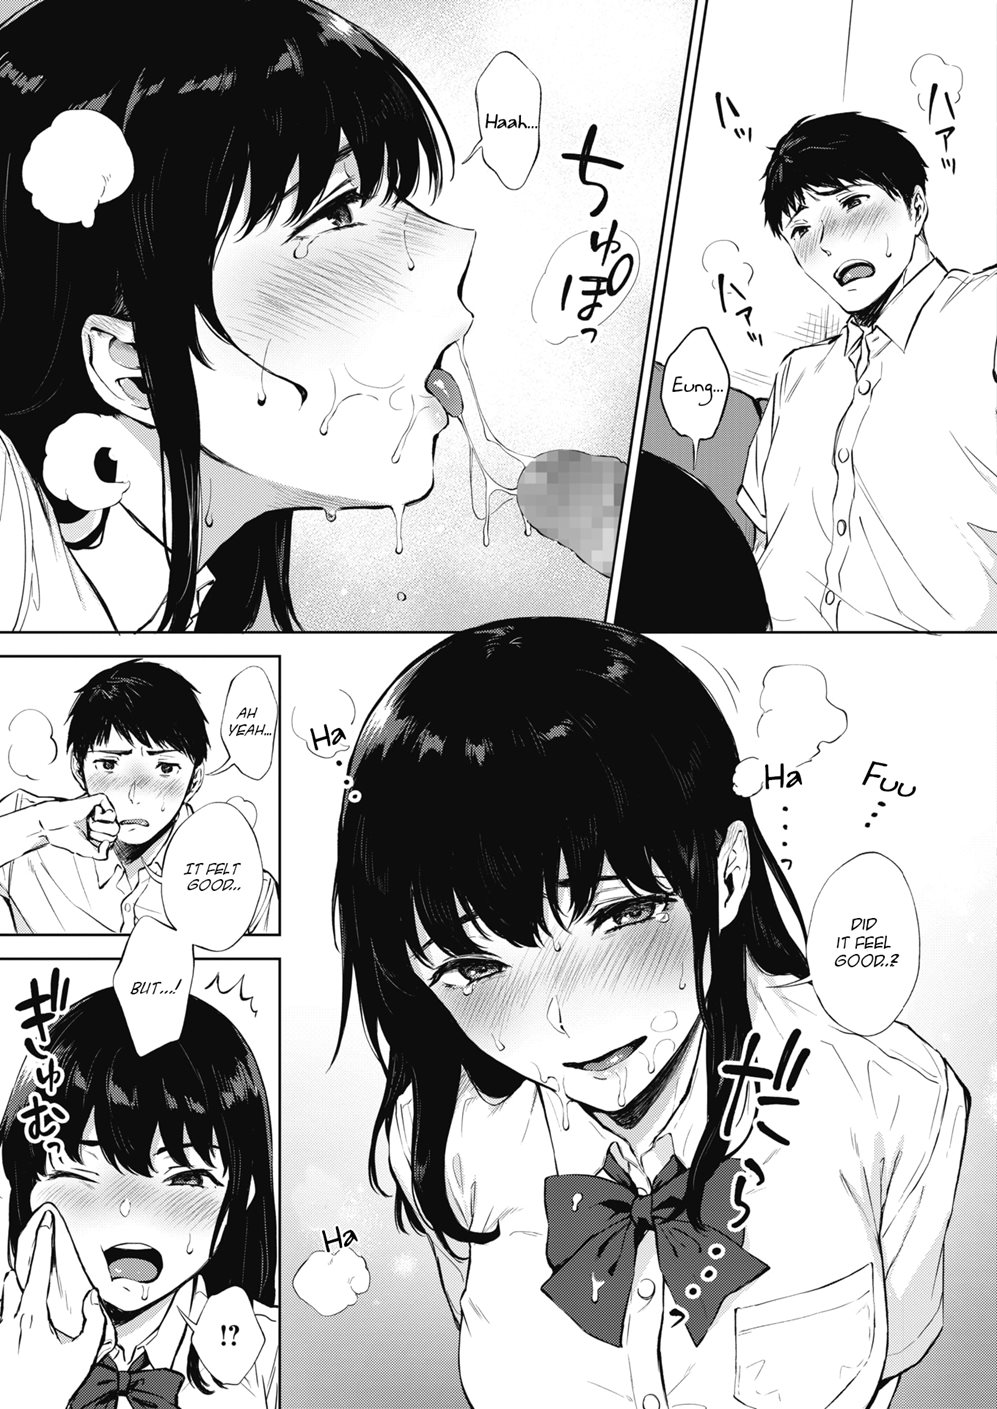 Deepthroat hentai manga